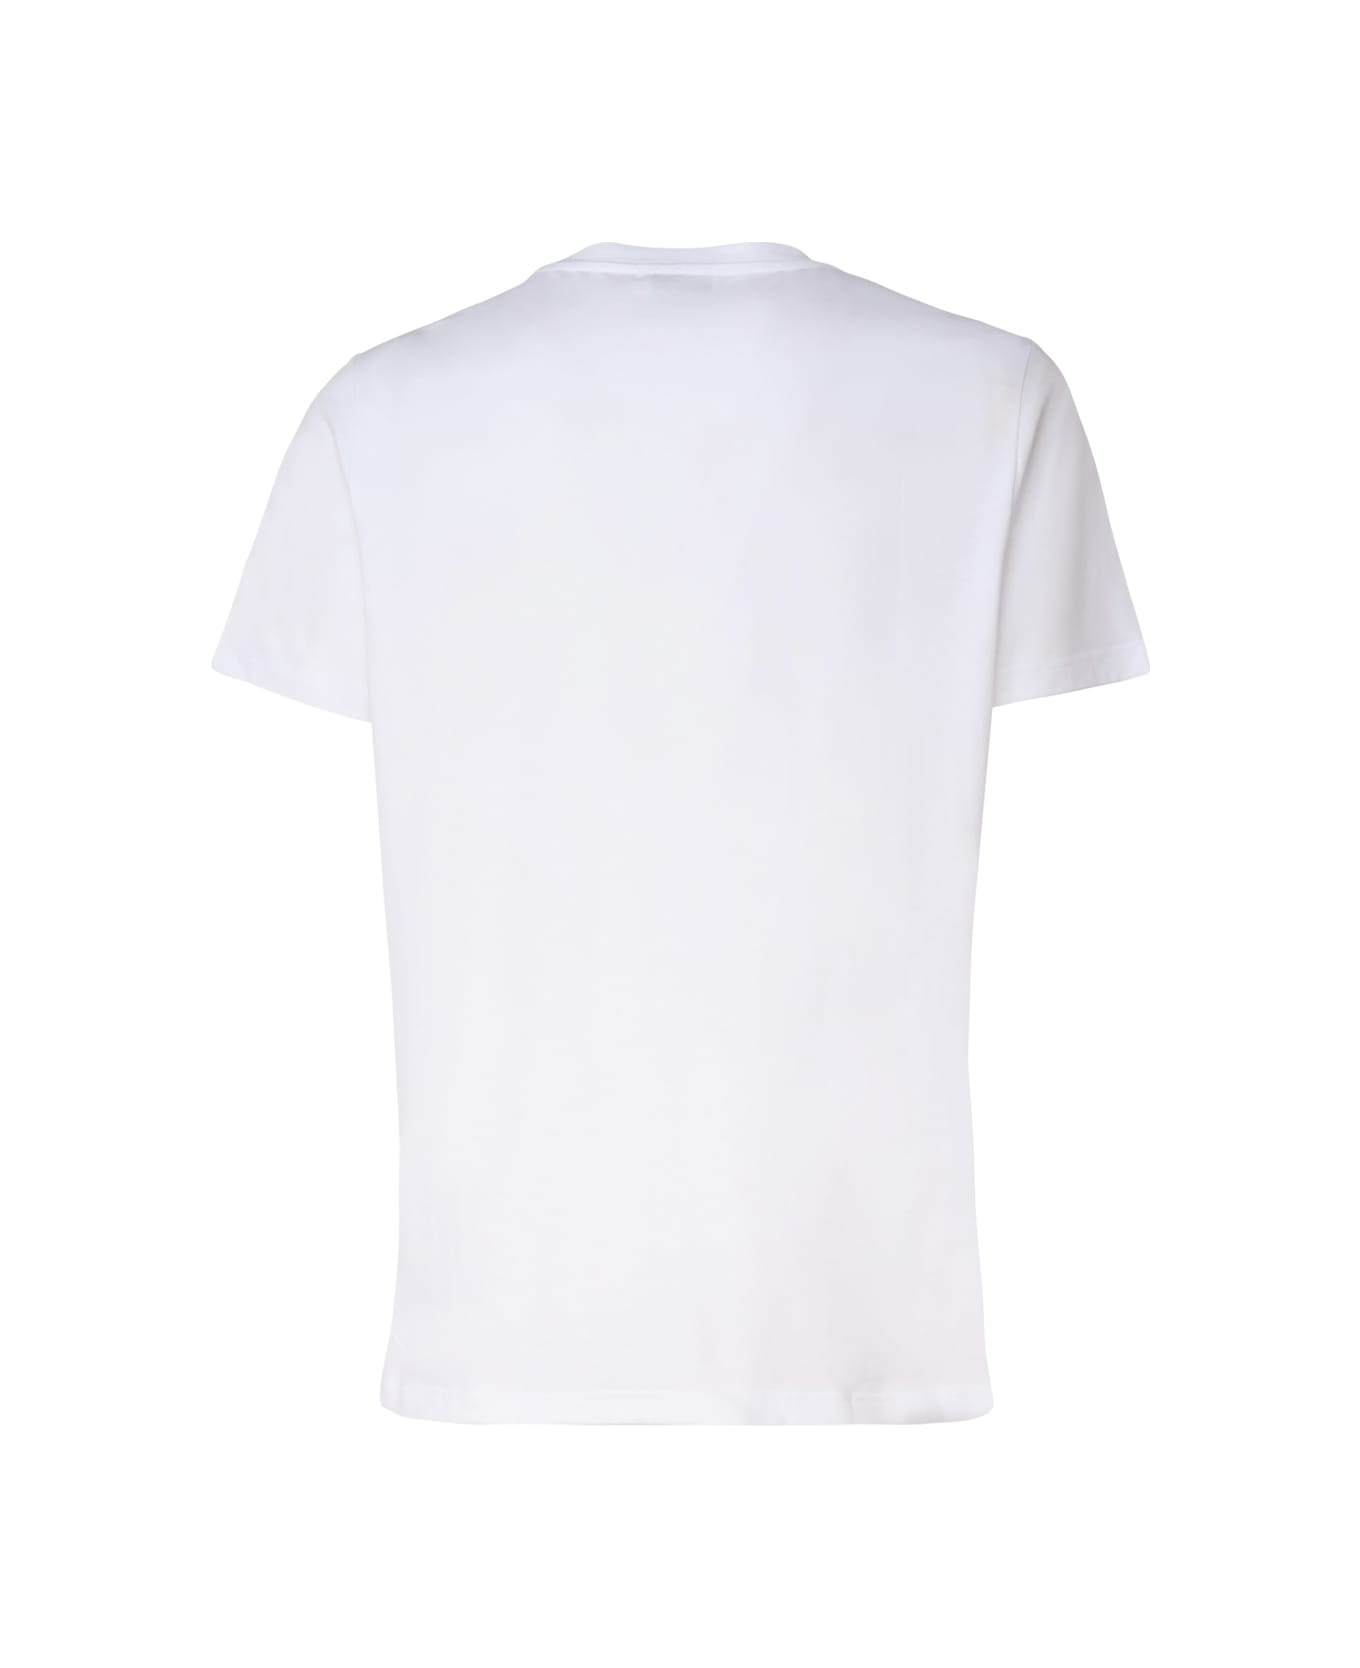 Dondup Regular Jersey T-shirt - White